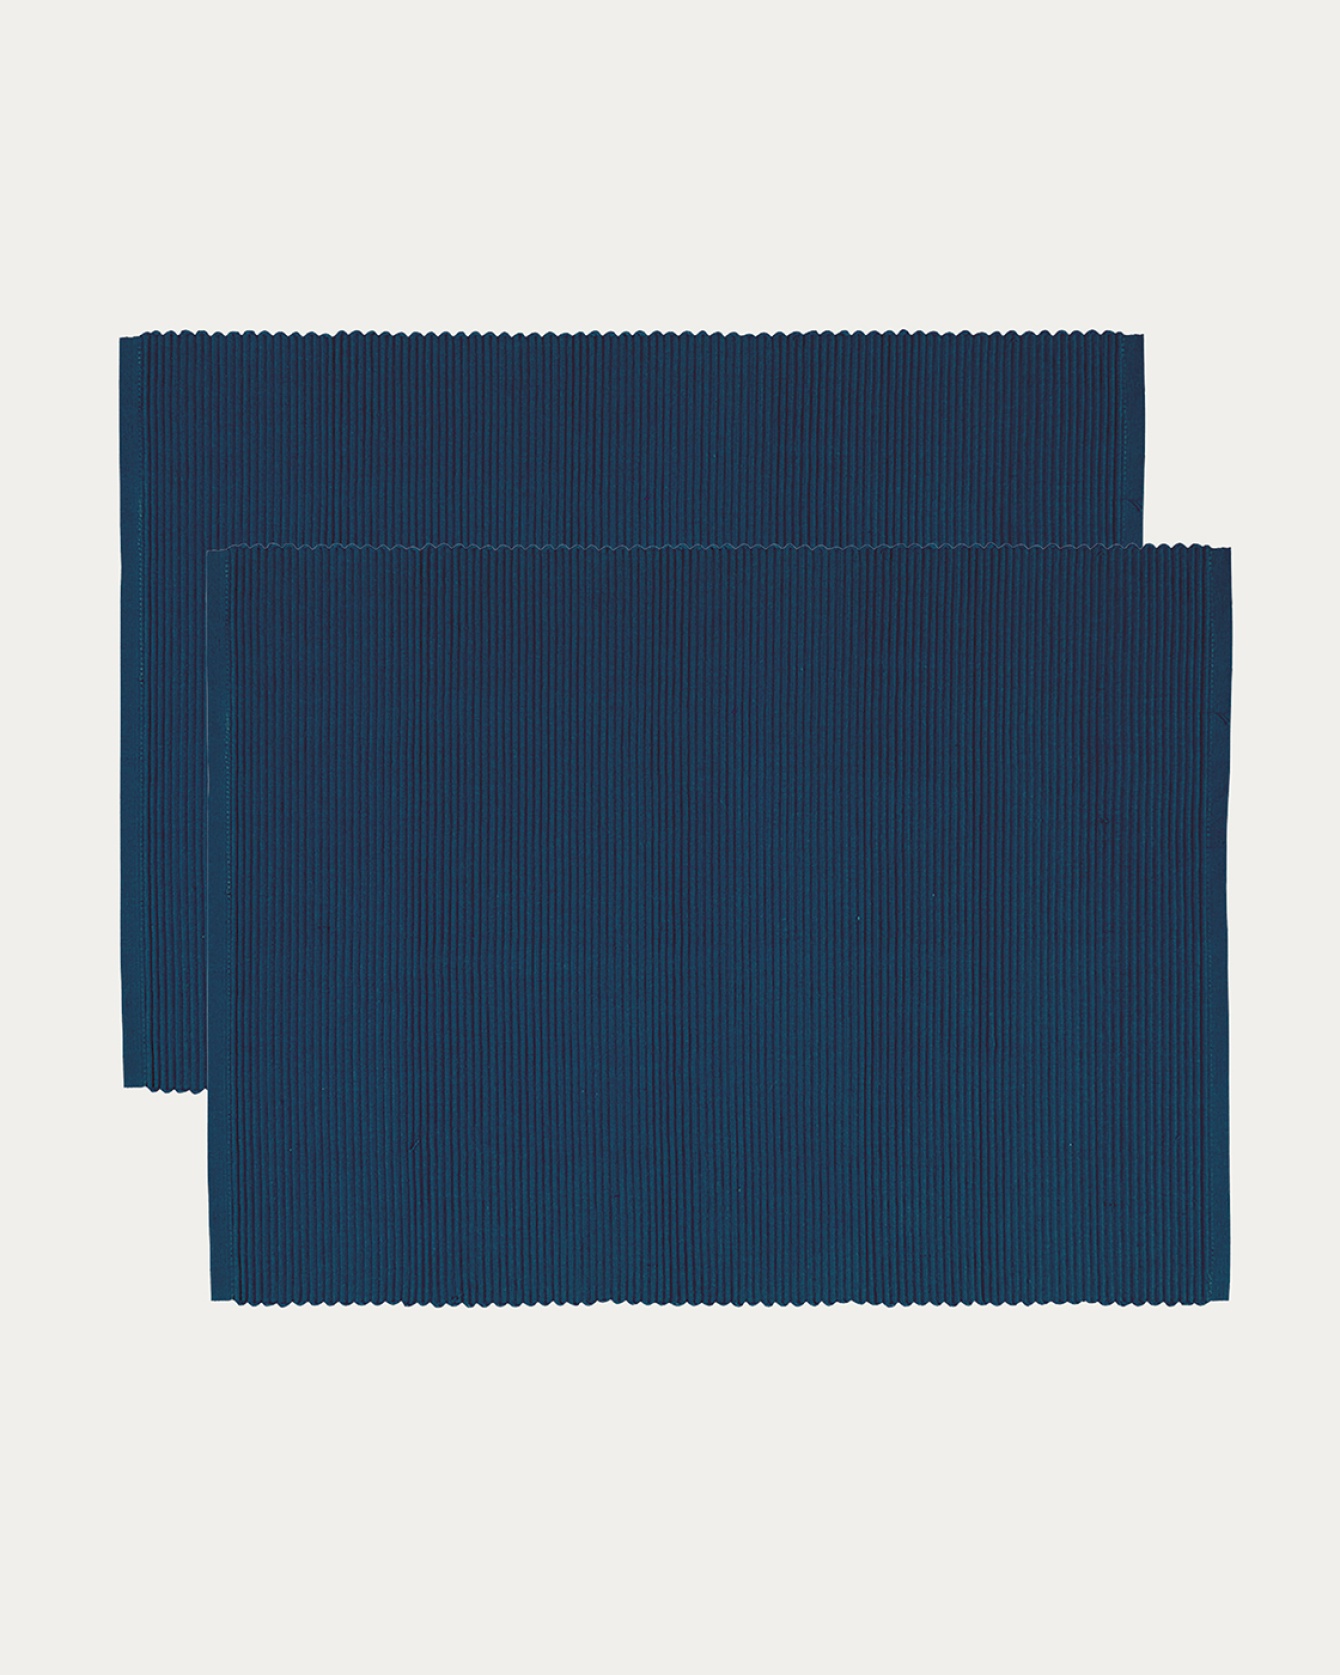 Produktbild indigoblau UNI Tischset aus weicher Baumwolle in Rippenqualität von LINUM DESIGN. Größe 35x46 cm und in 2er-Pack verkauft.